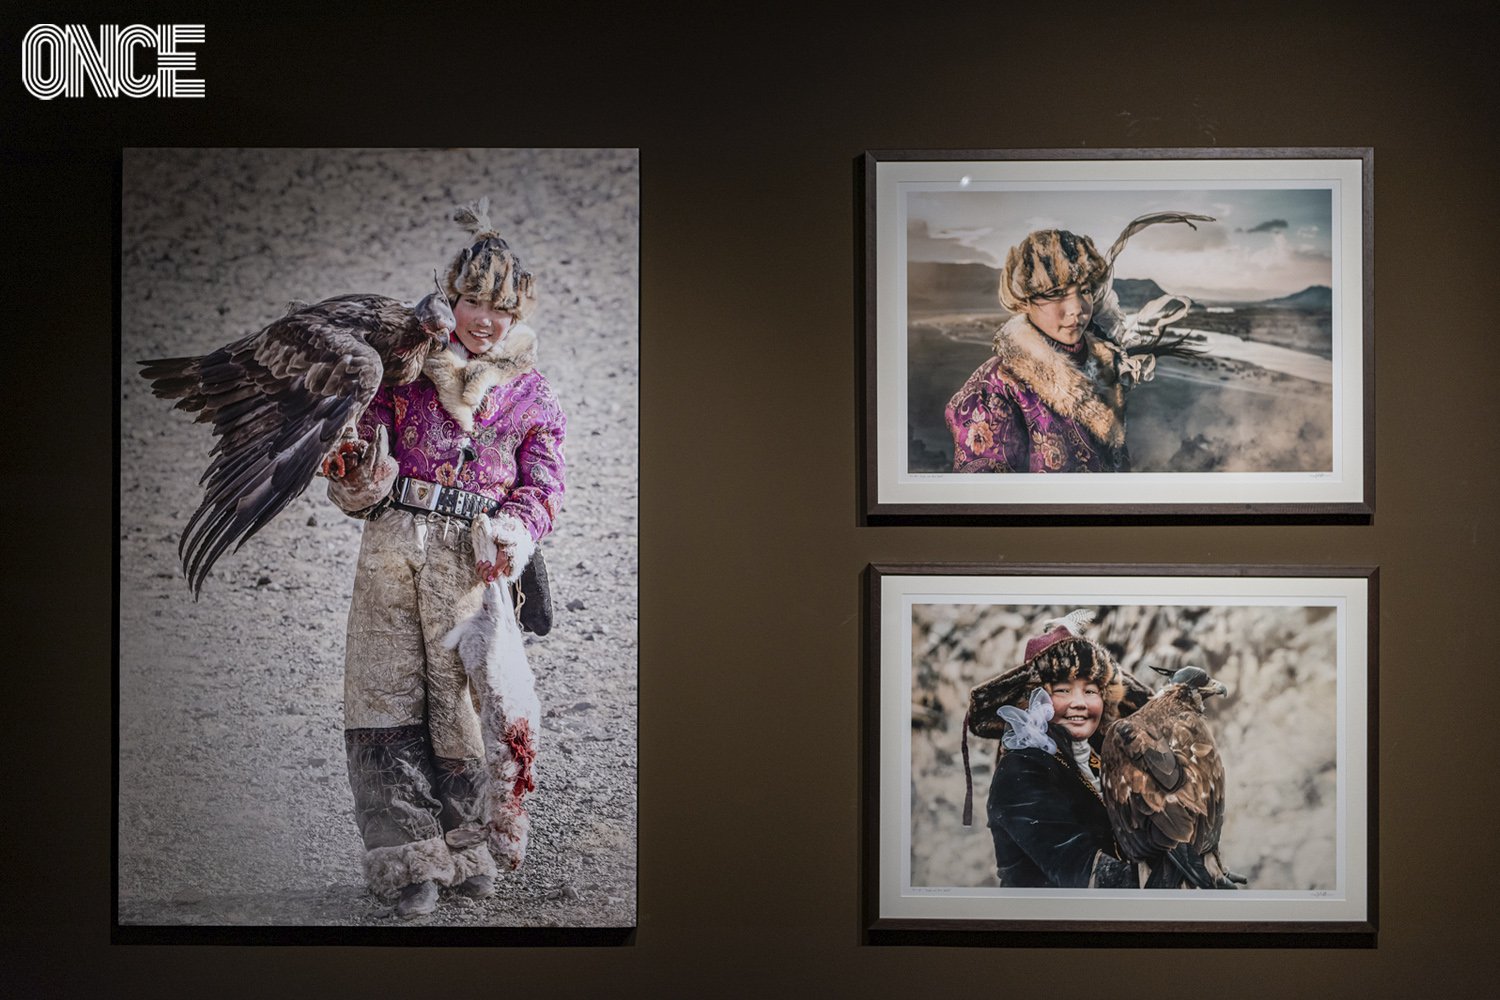 7 ปีแห่งการเดินทางท่องโลกของ ‘JKboy - เจตนิพันธ์ เกษประดิษฐ์’ สู่นิทรรศการภาพถ่ายชนเผ่าพื้นเมืองน่าทึ่ง